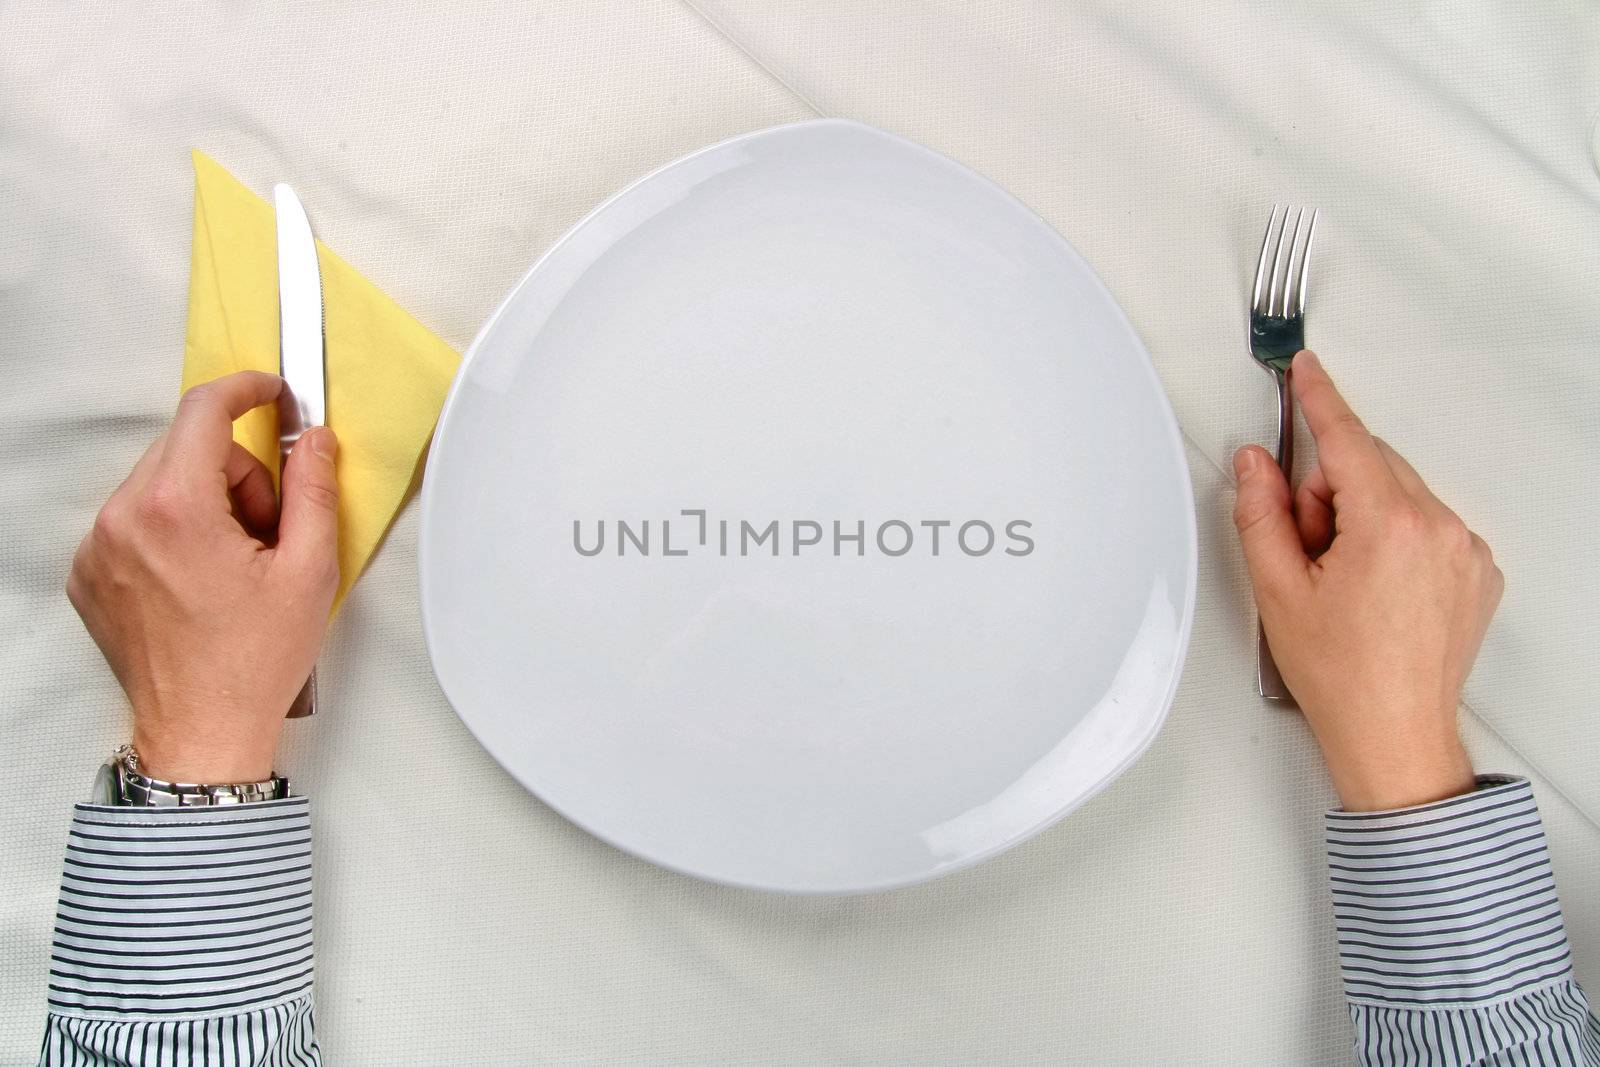 Man waiting near an empty plate